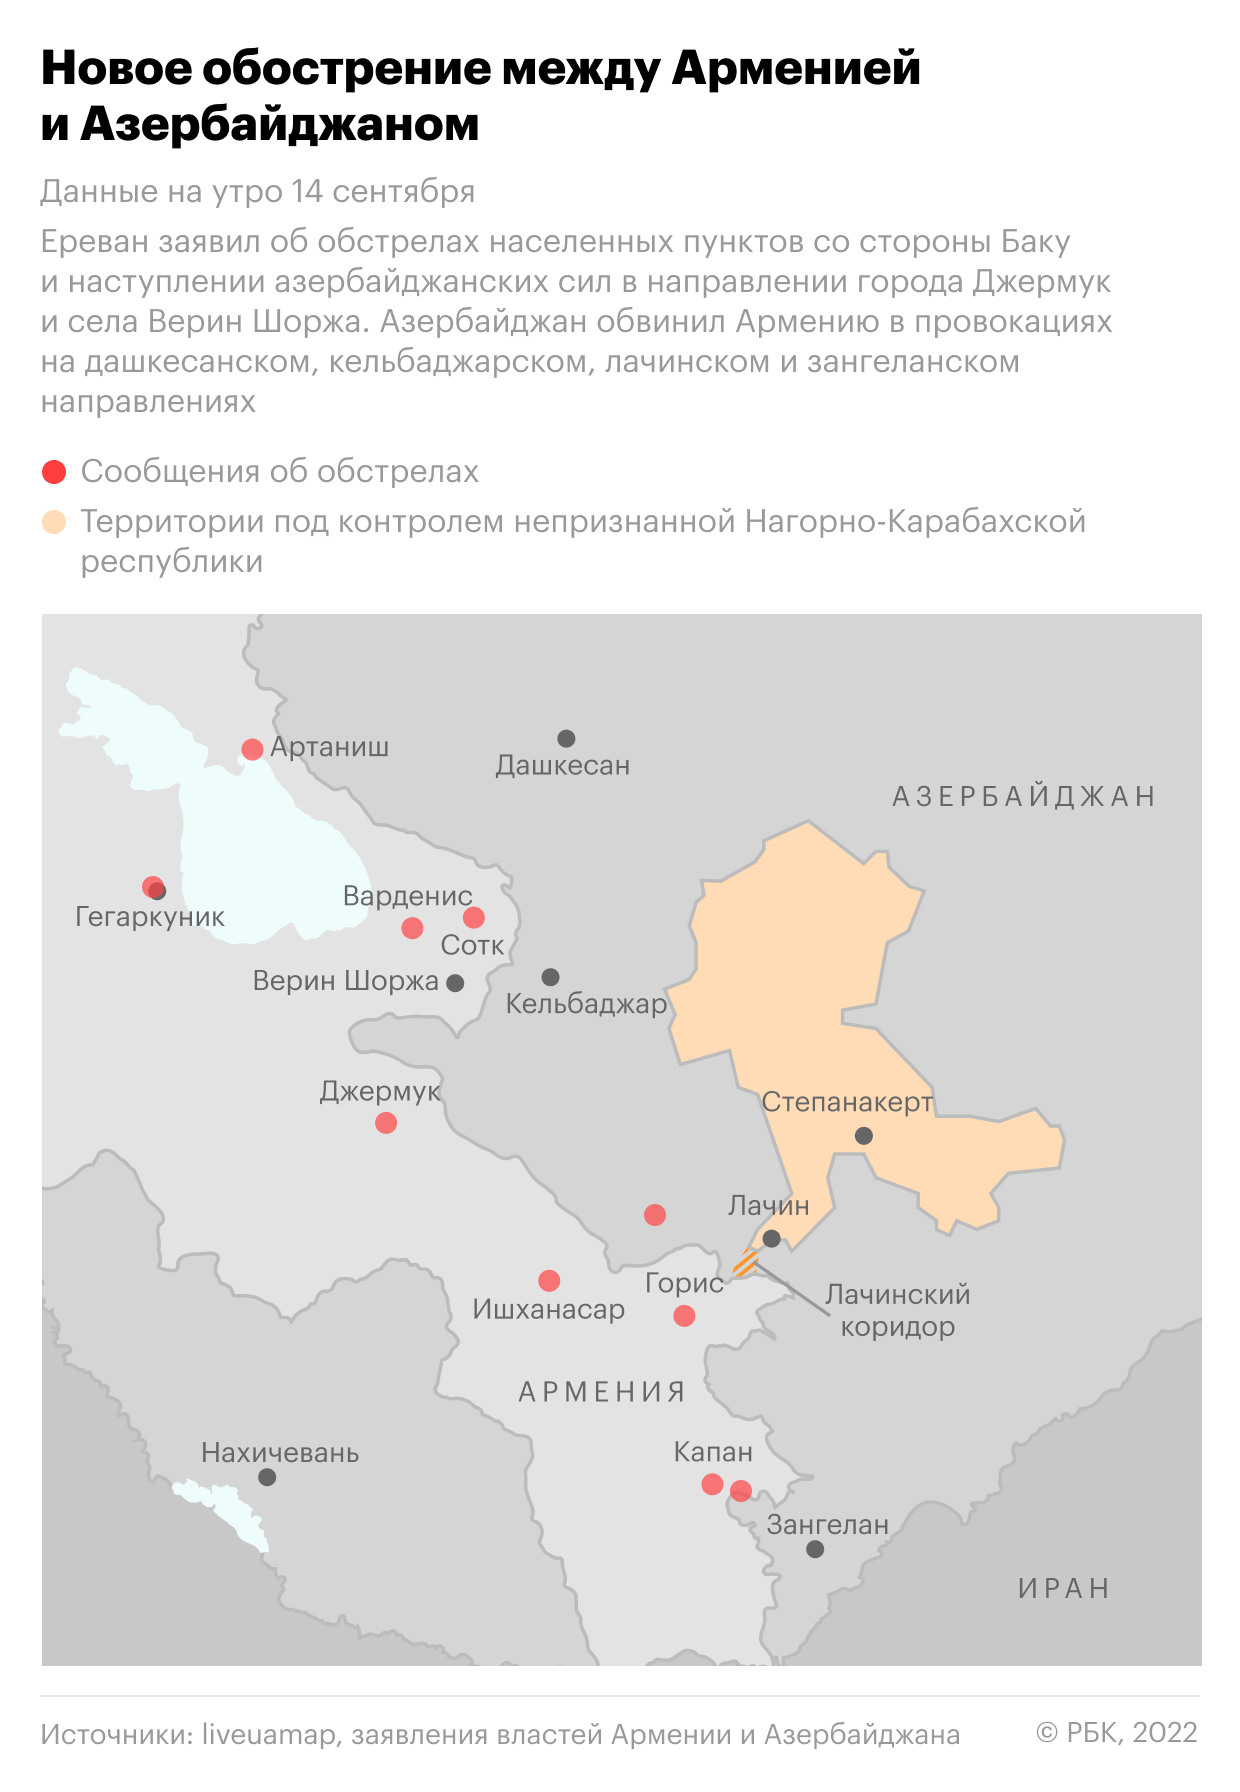 Боевые столкновения Армении и Азербайджана вышли за пределы Карабаха